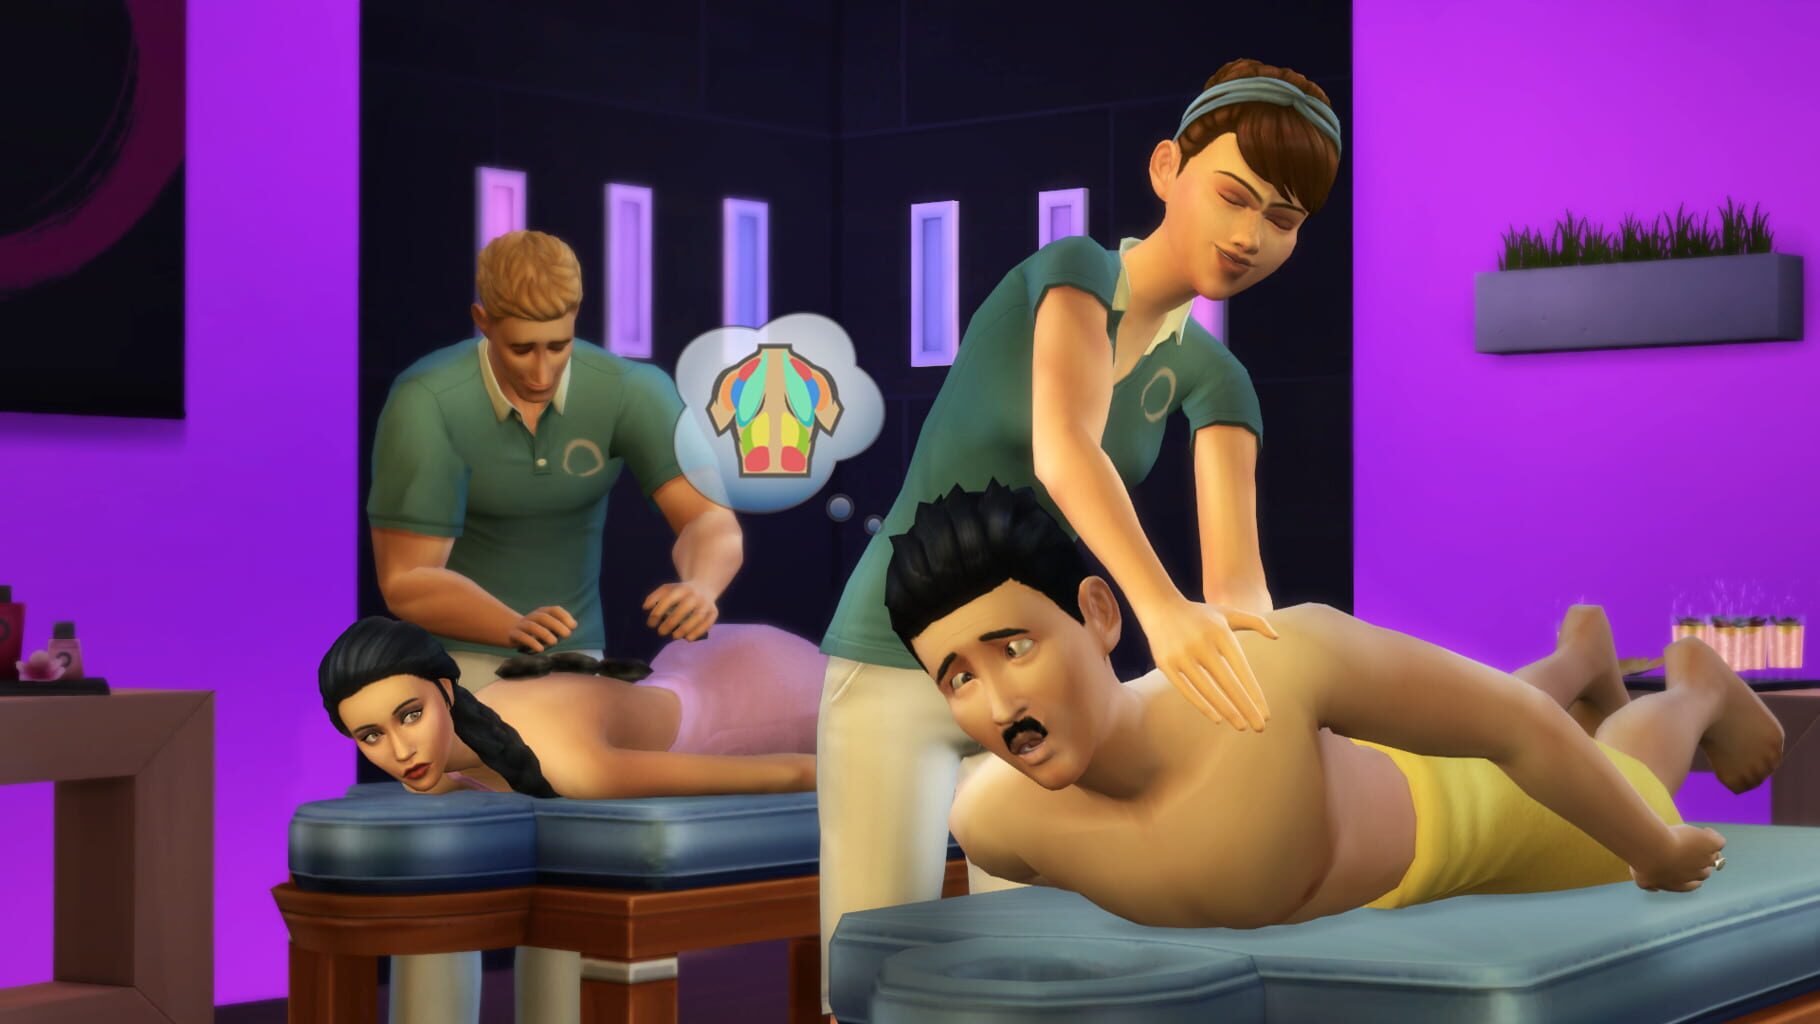 Captura de pantalla - The Sims 4: Spa Day